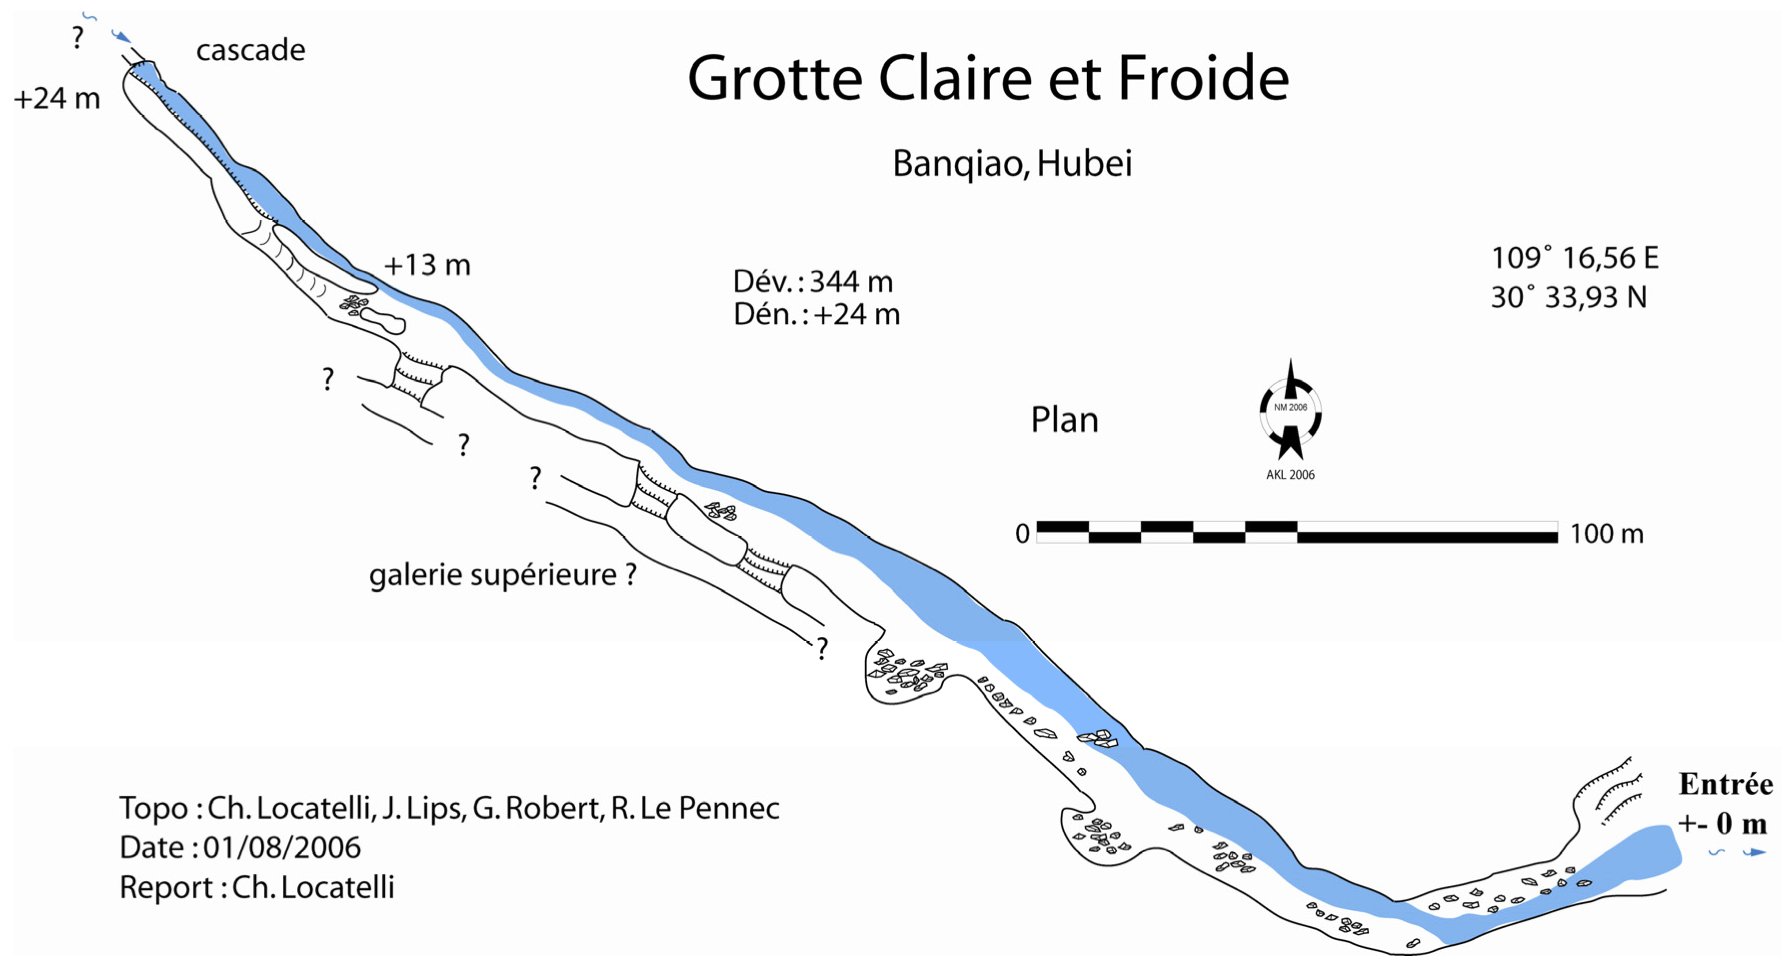 topographie Résurgence Claire et Froide 